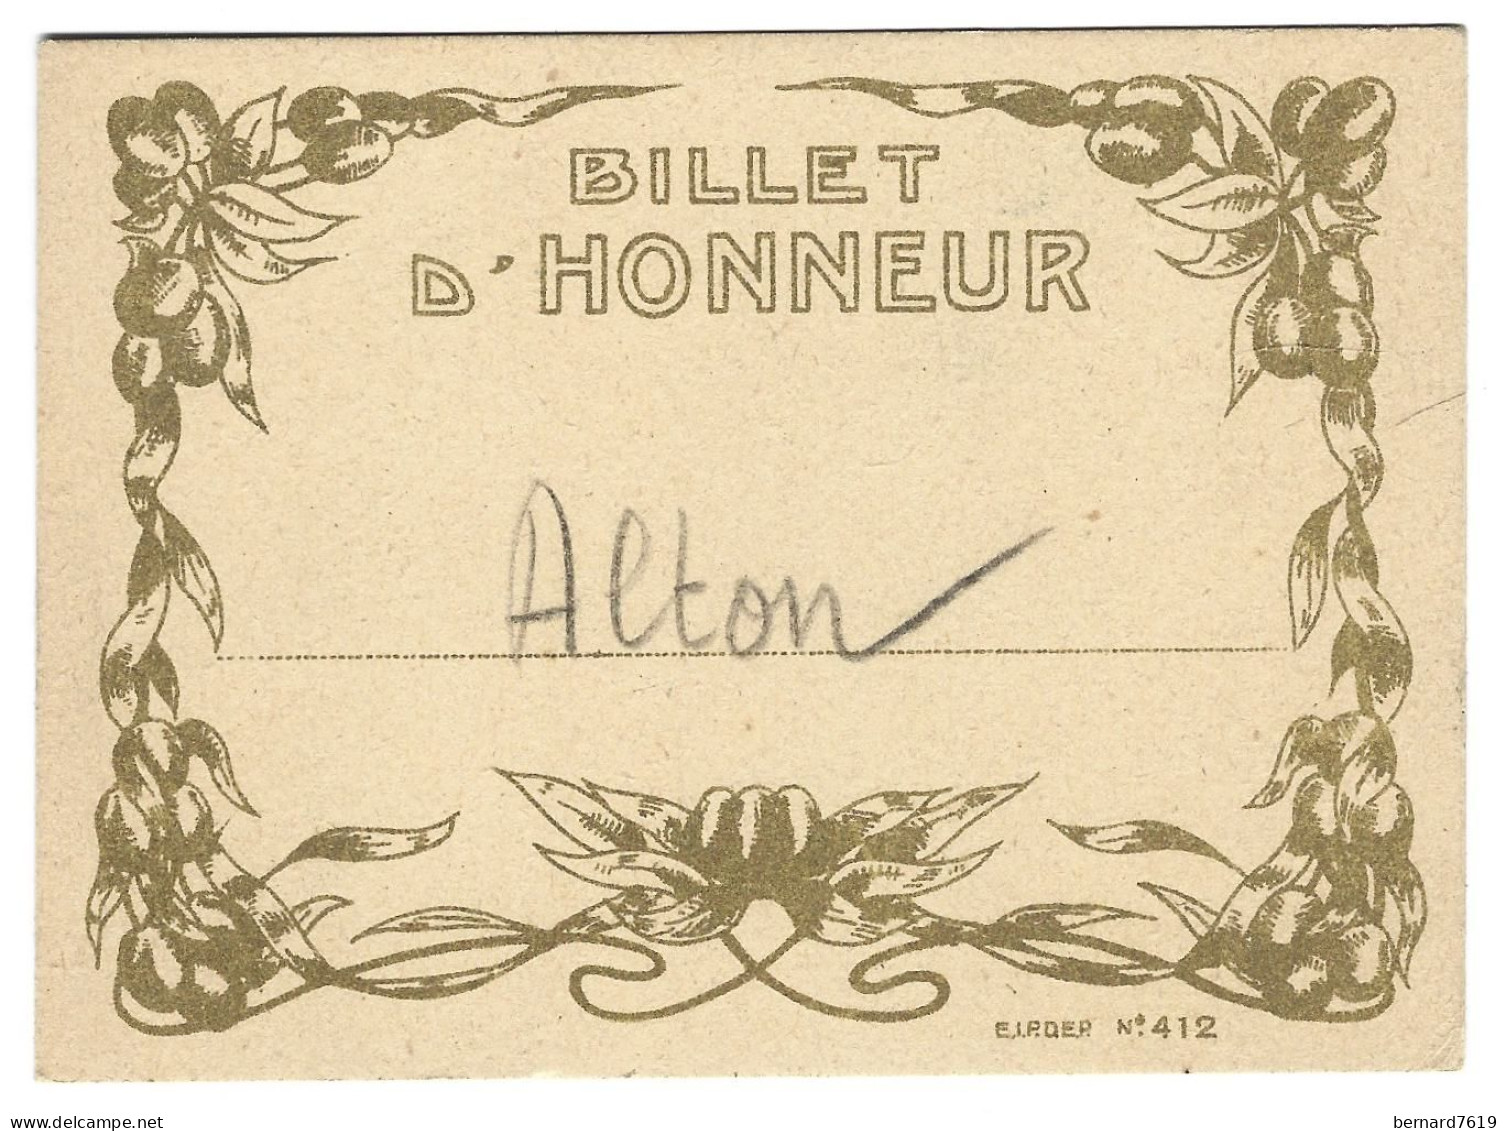 Billet D'honneur Alton -ecole - Diplome Und Schulzeugnisse